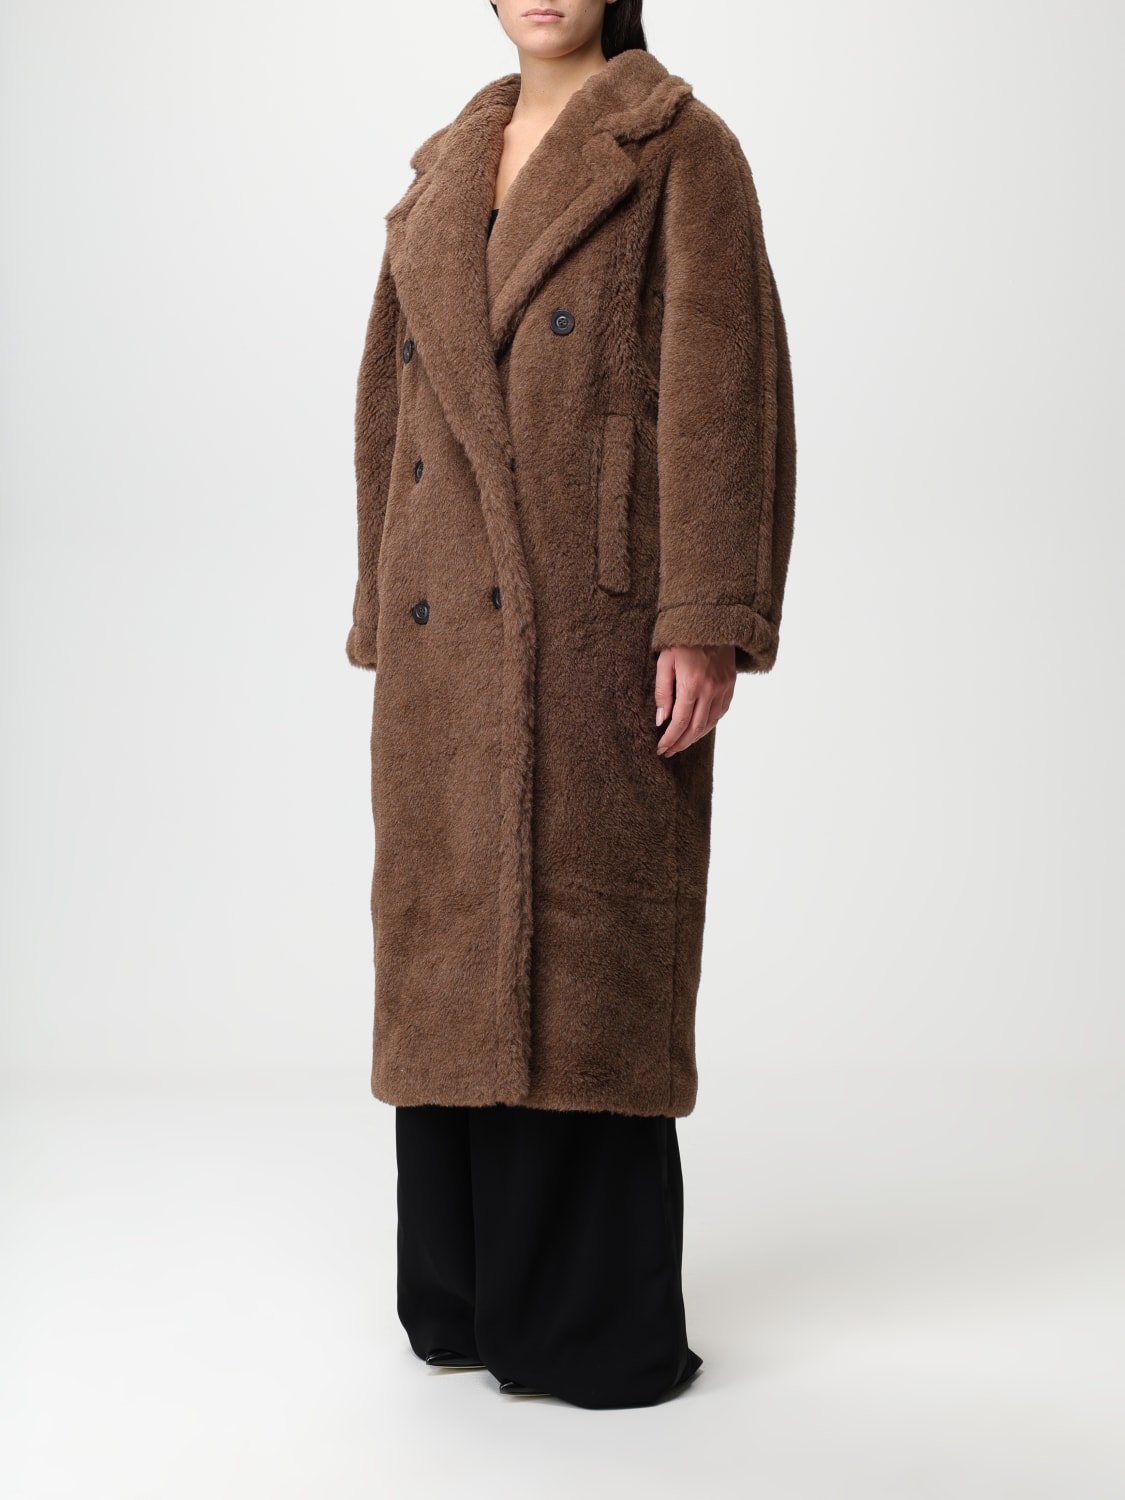 MAX MARA: Teddy coat in wool and silk blend - Brown | Max Mara coat ...